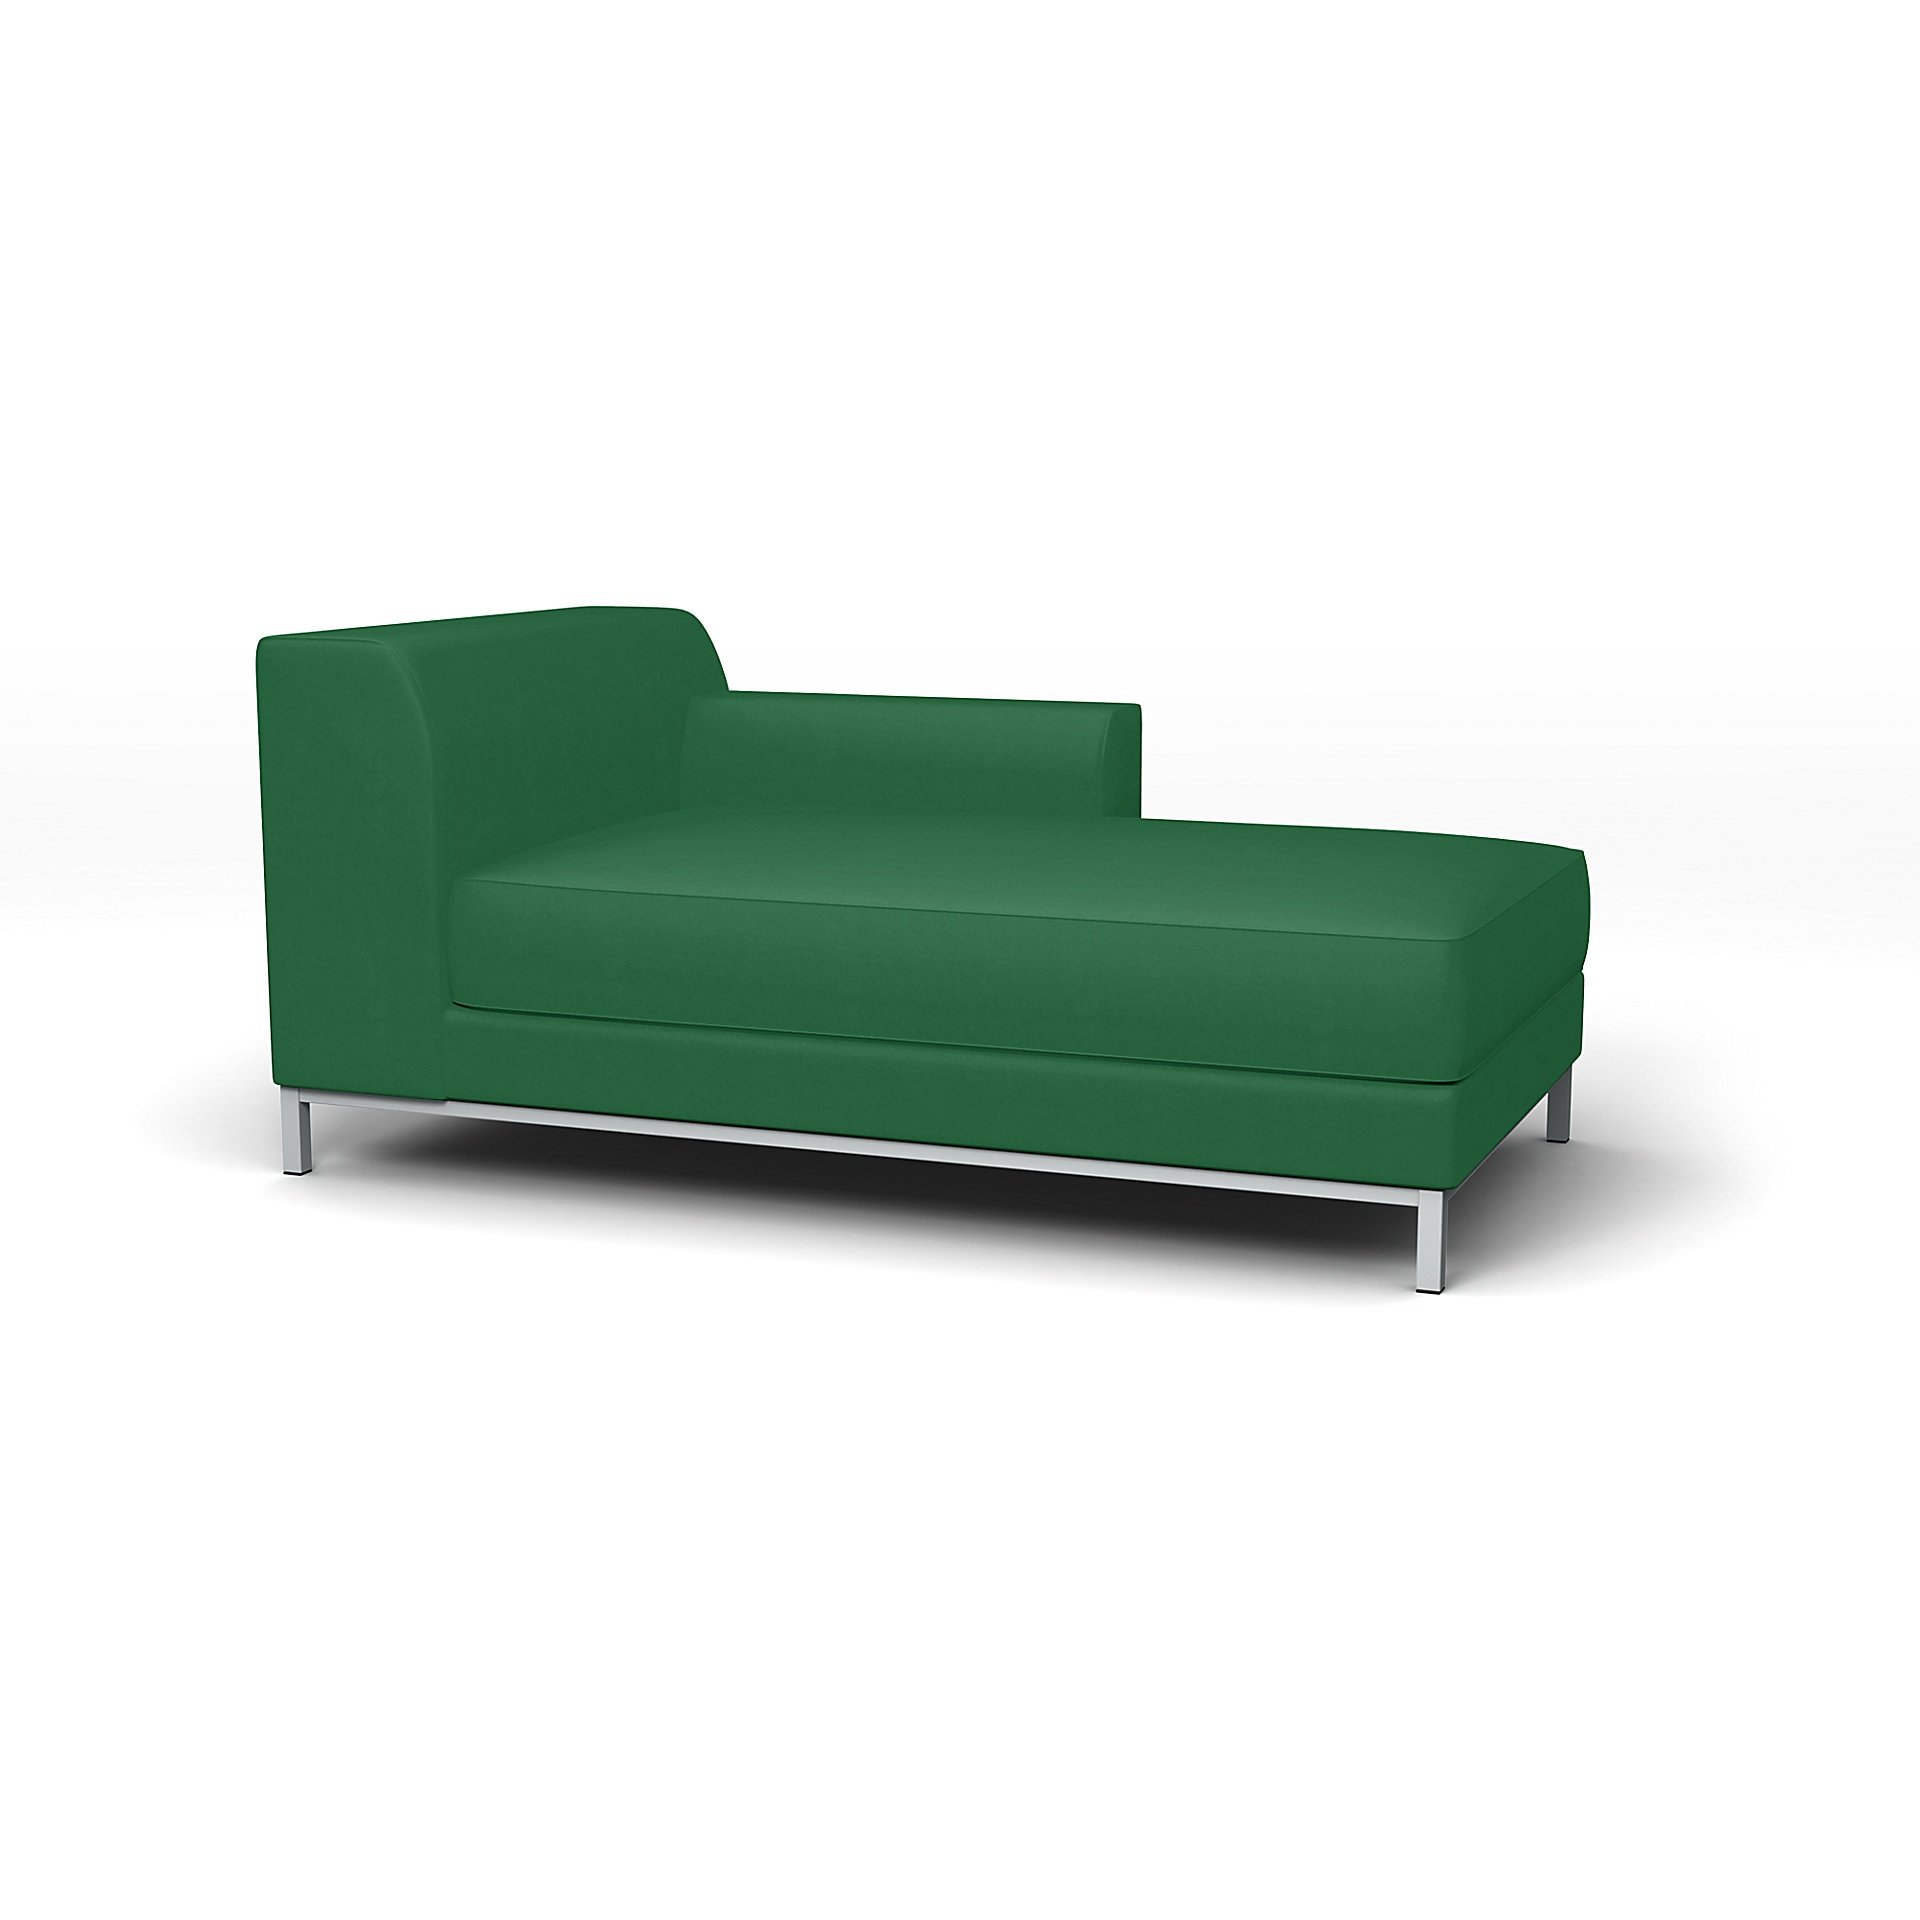 IKEA - Kramfors Chaise Longue with Right Arm Cover, Abundant Green, Velvet - Bemz